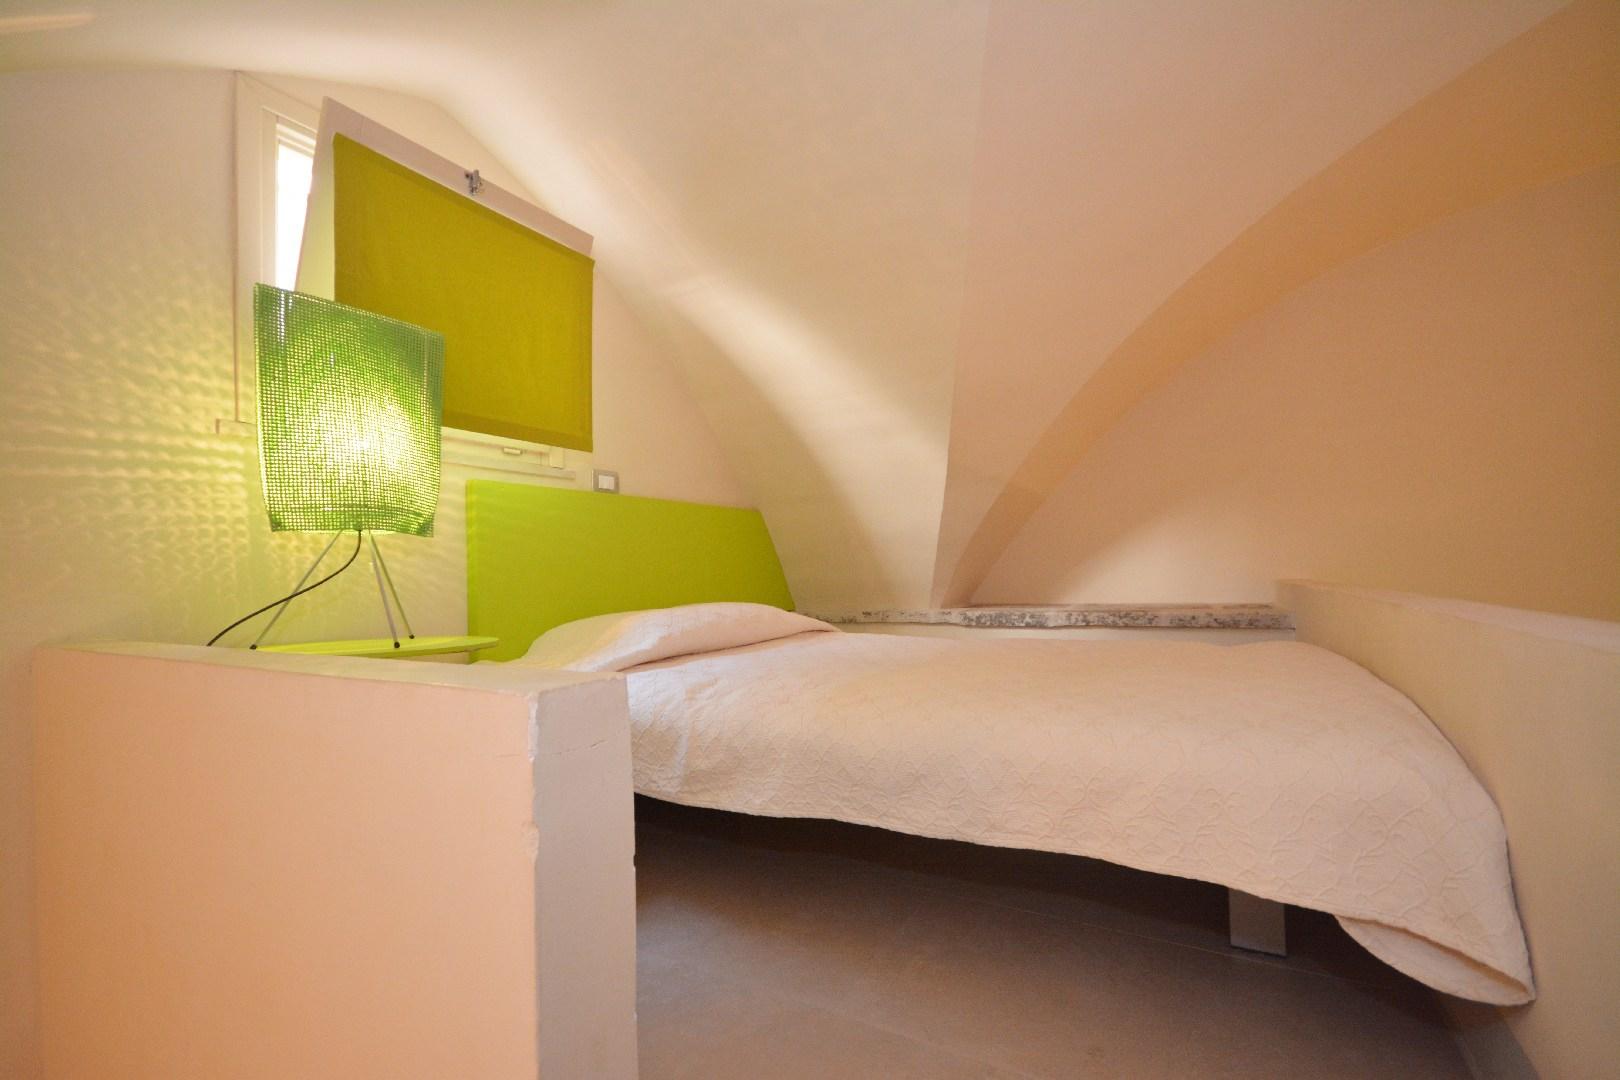 Suite Sales & Veranda Soggiorno -  soppalco con letto ad 1 piazza e mezza